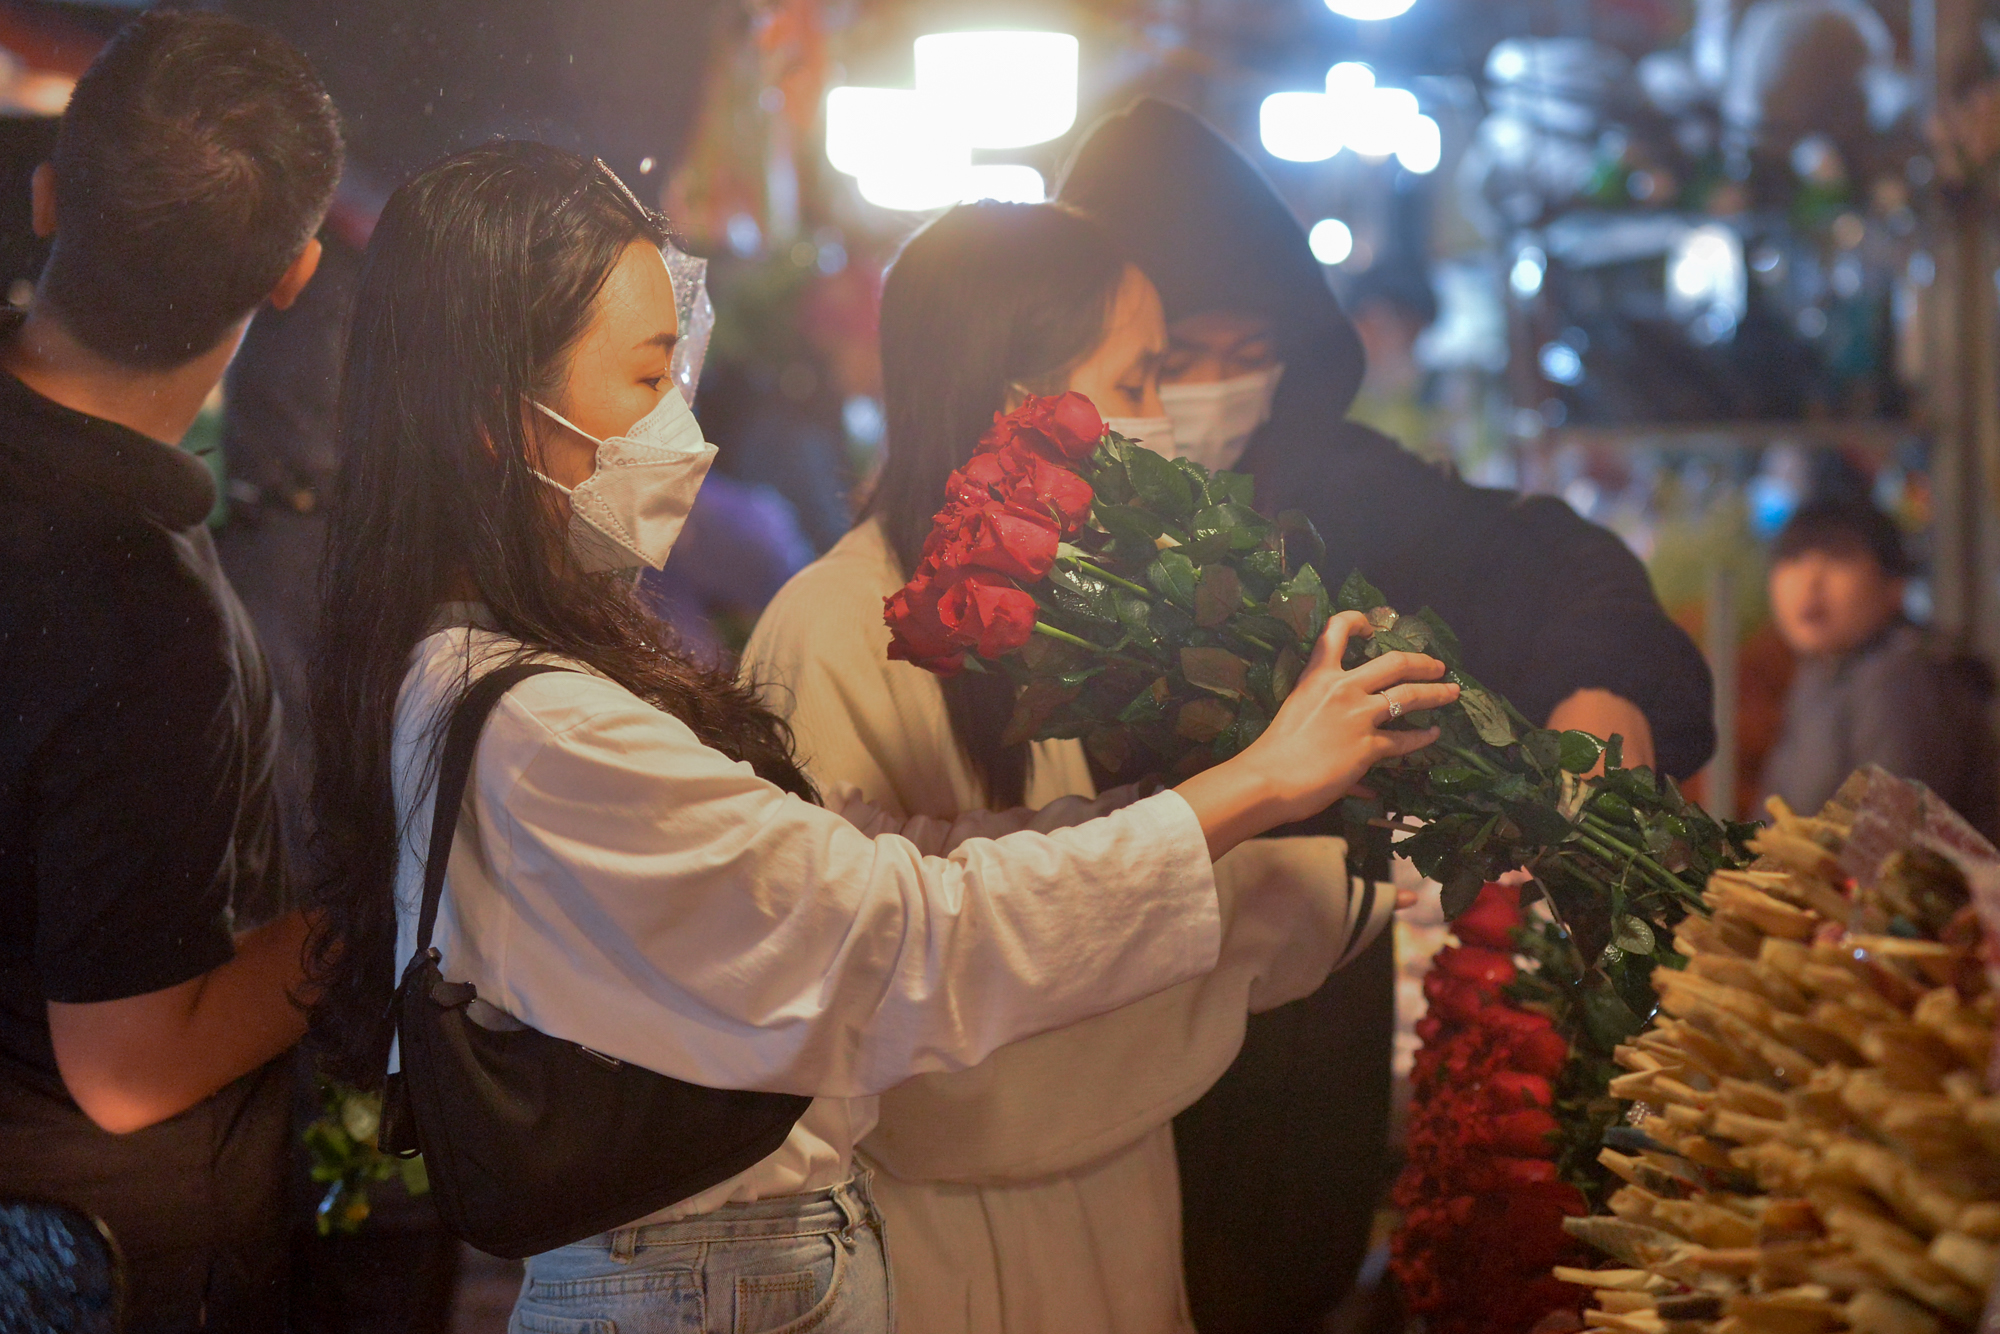 Ảnh: Mặc áo mưa, đội ô đi chợ hoa đêm lớn nhất miền Bắc trước ngày Phụ nữ Việt Nam 20/10, nhiều người co ro vì lạnh - Ảnh 11.